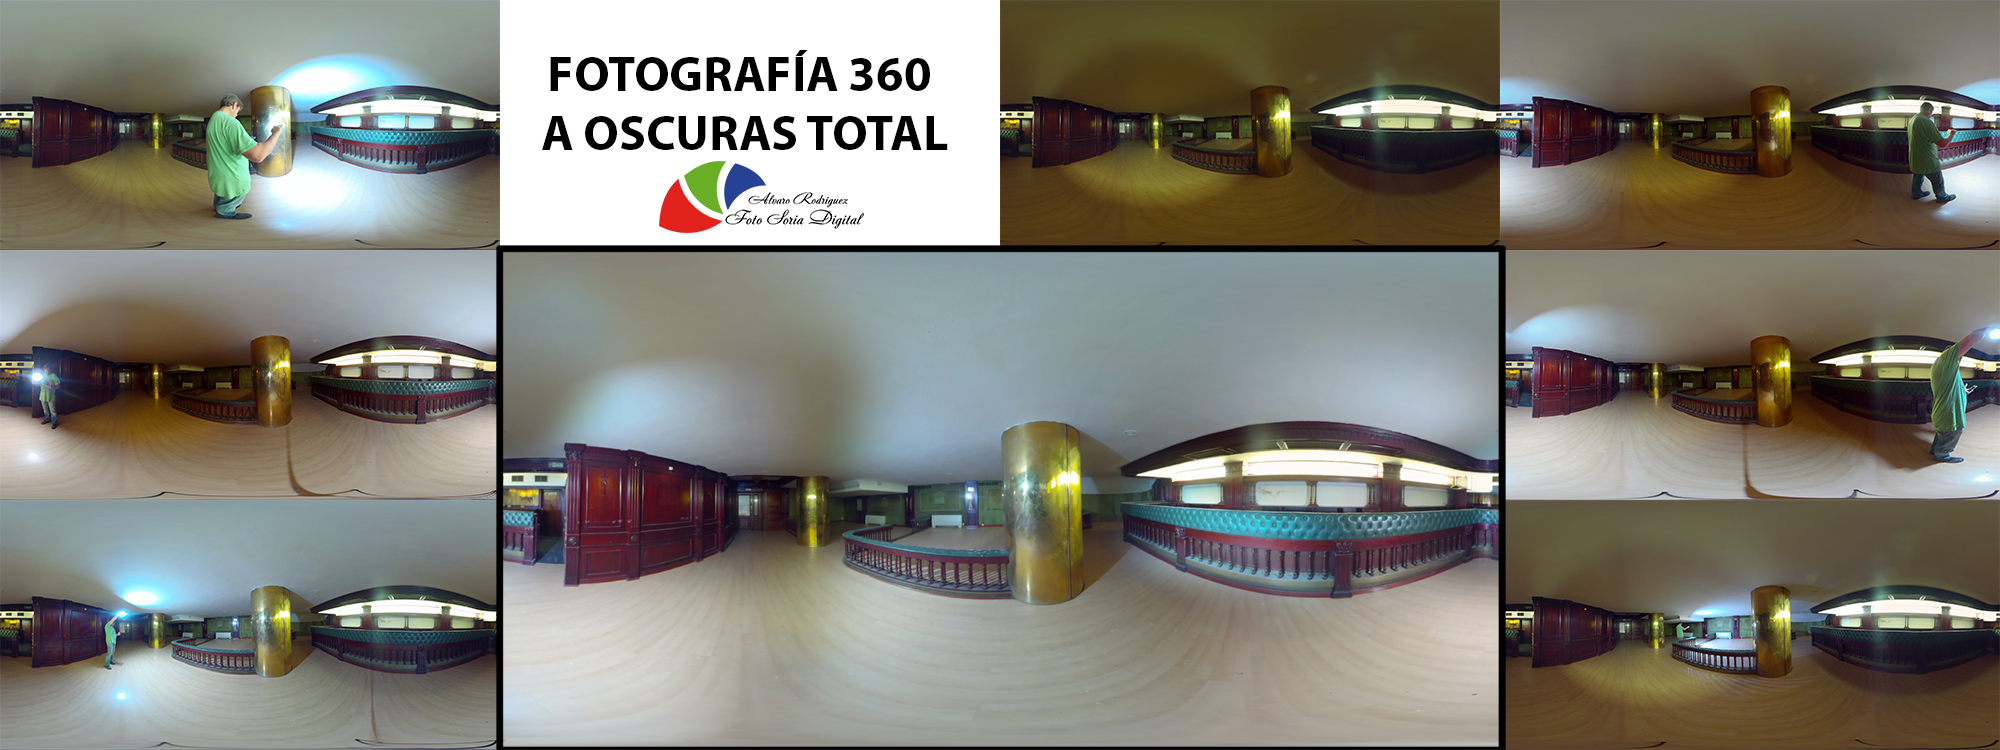 Concierto en el centro San Agustín del grupo sarañana en el Burgo de osma Soria eventos de fotografía fotógrafo profesional